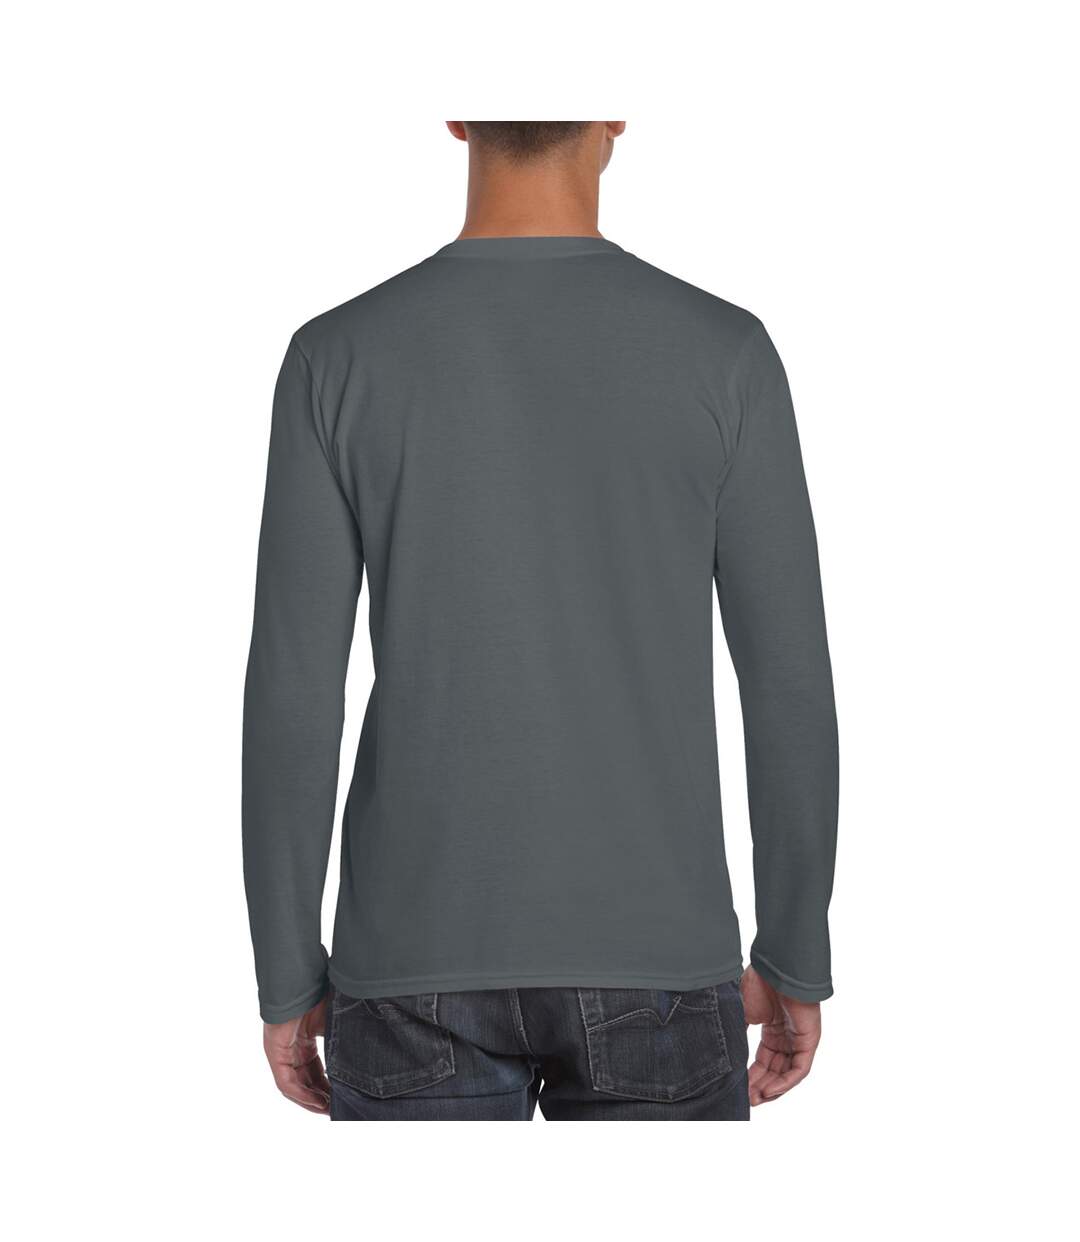 Gildan – Lot de 5 T-shirts manches longues - Hommes (Gris foncé) - UTBC4808